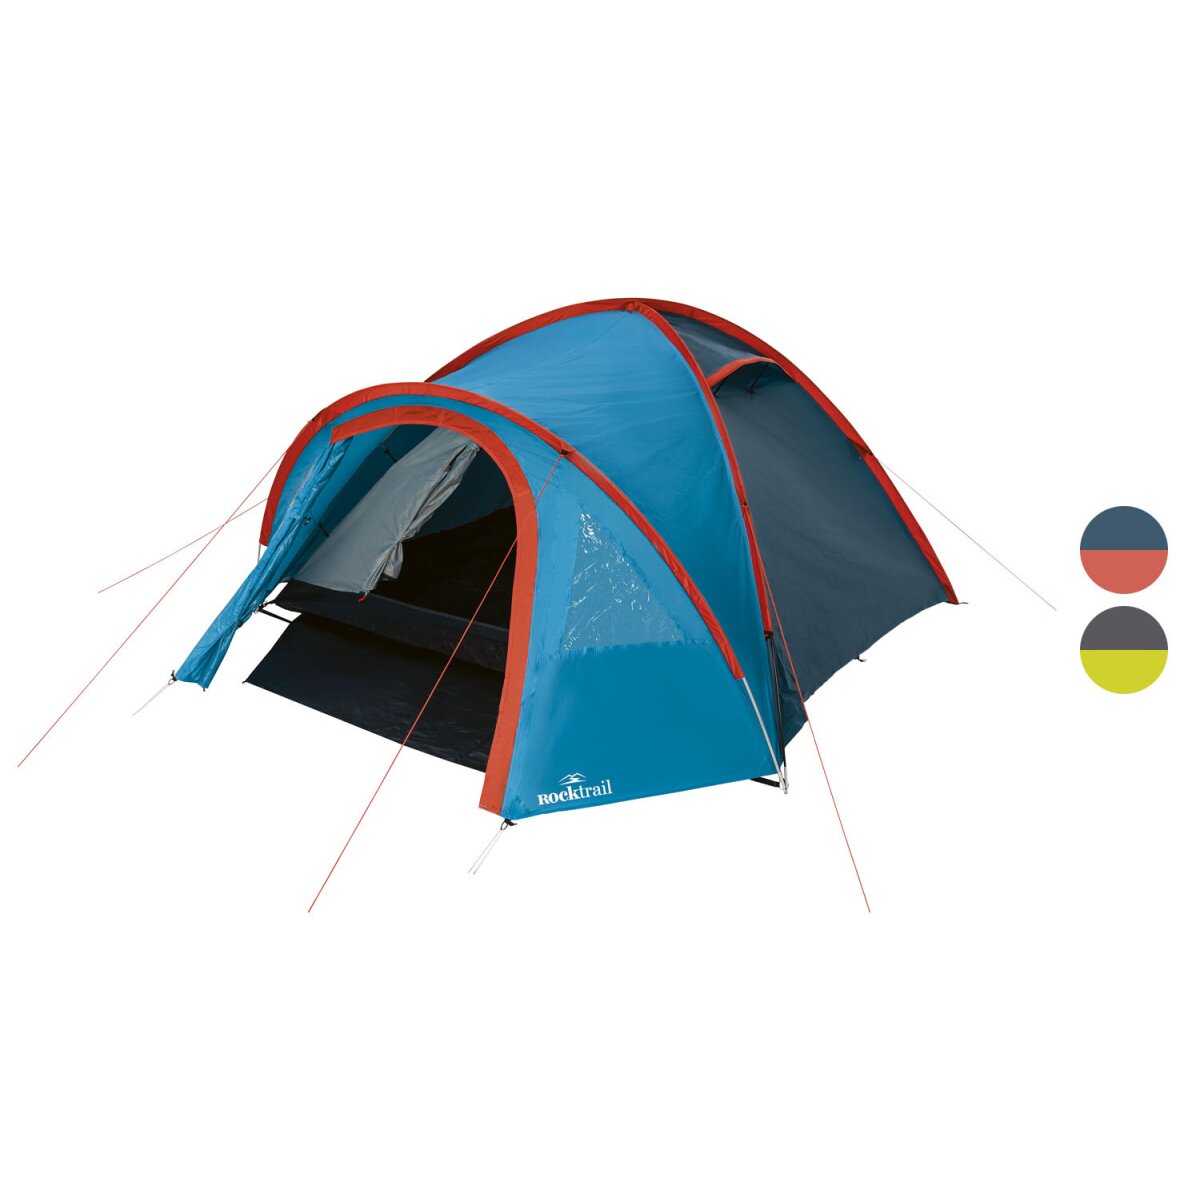 B-Ware, Personen, Rocktrail 34,99 mit € - Campingzelt für Doppeldach 4